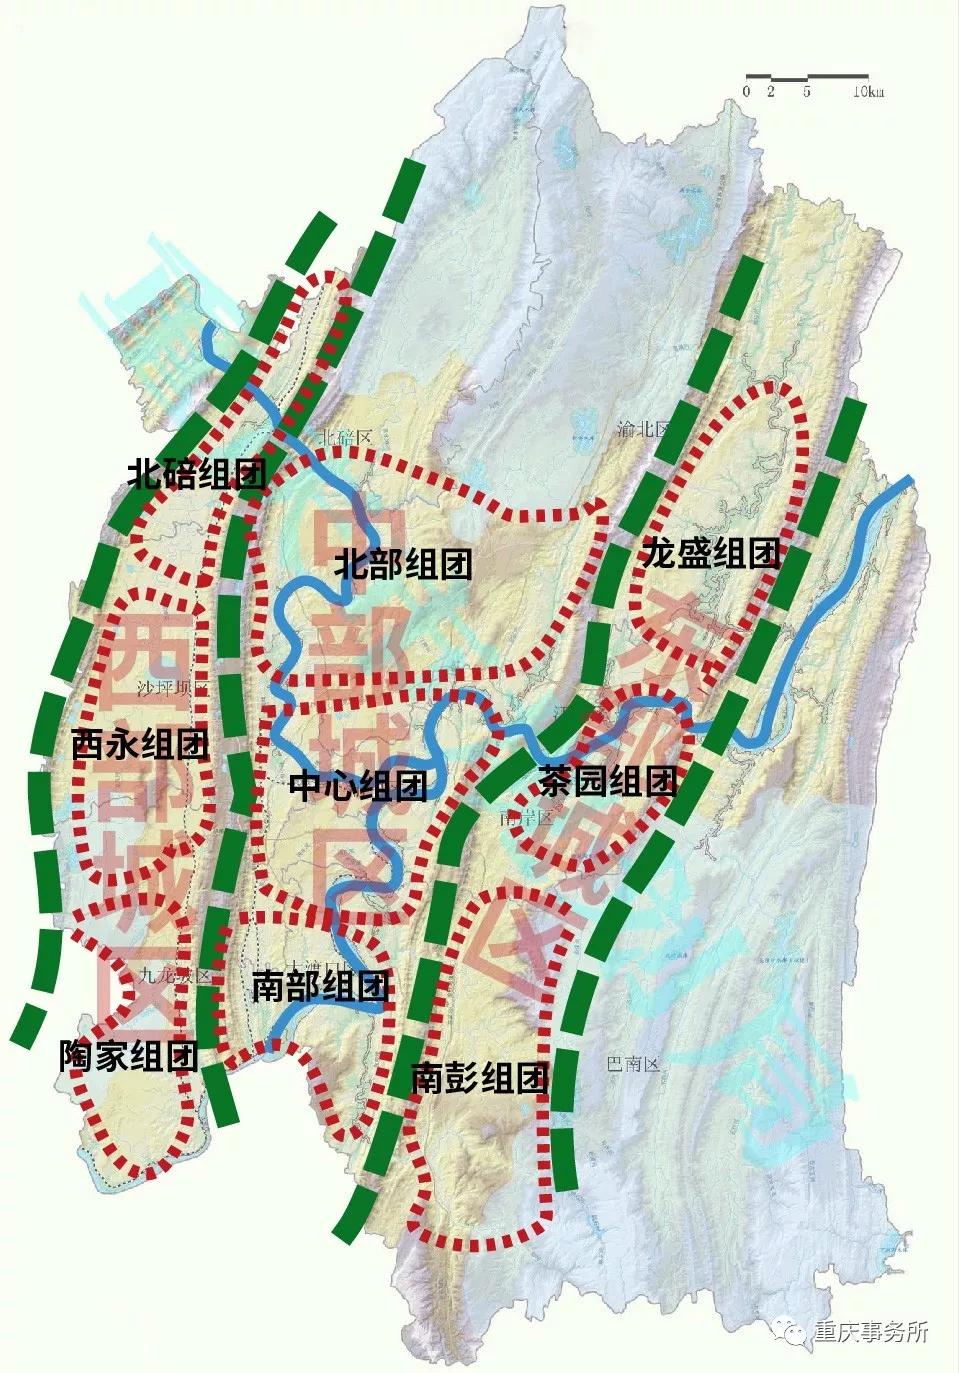 重庆主城区新版图首次披露三大城区9大组团共筑国际化现代都市